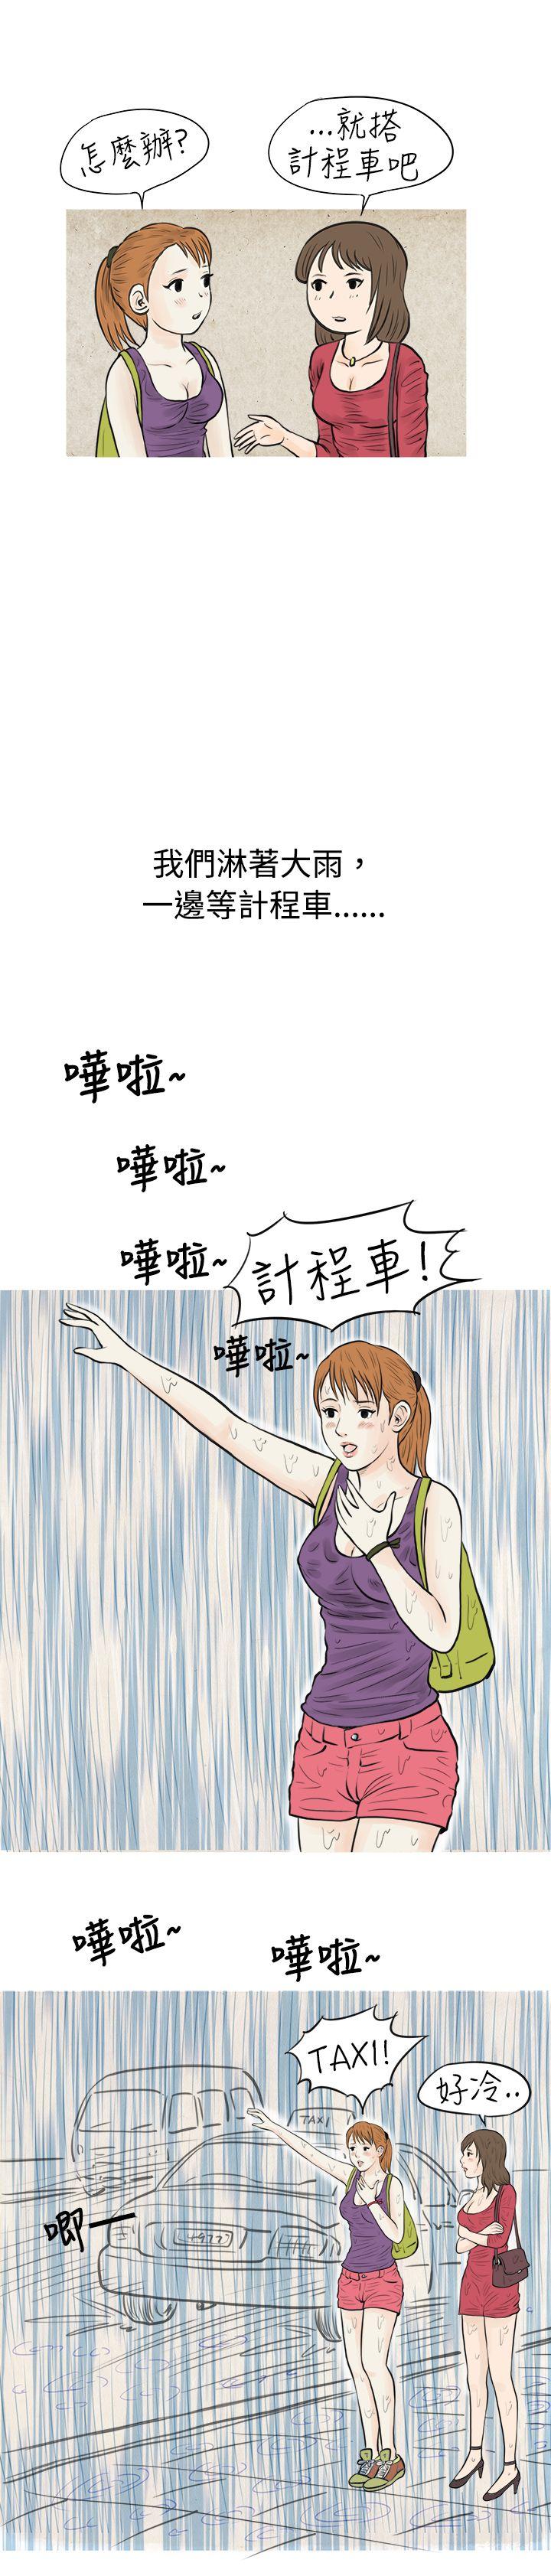 韩国污漫画 秘密Story 在弘大夜店的豔遇故事(上) 8